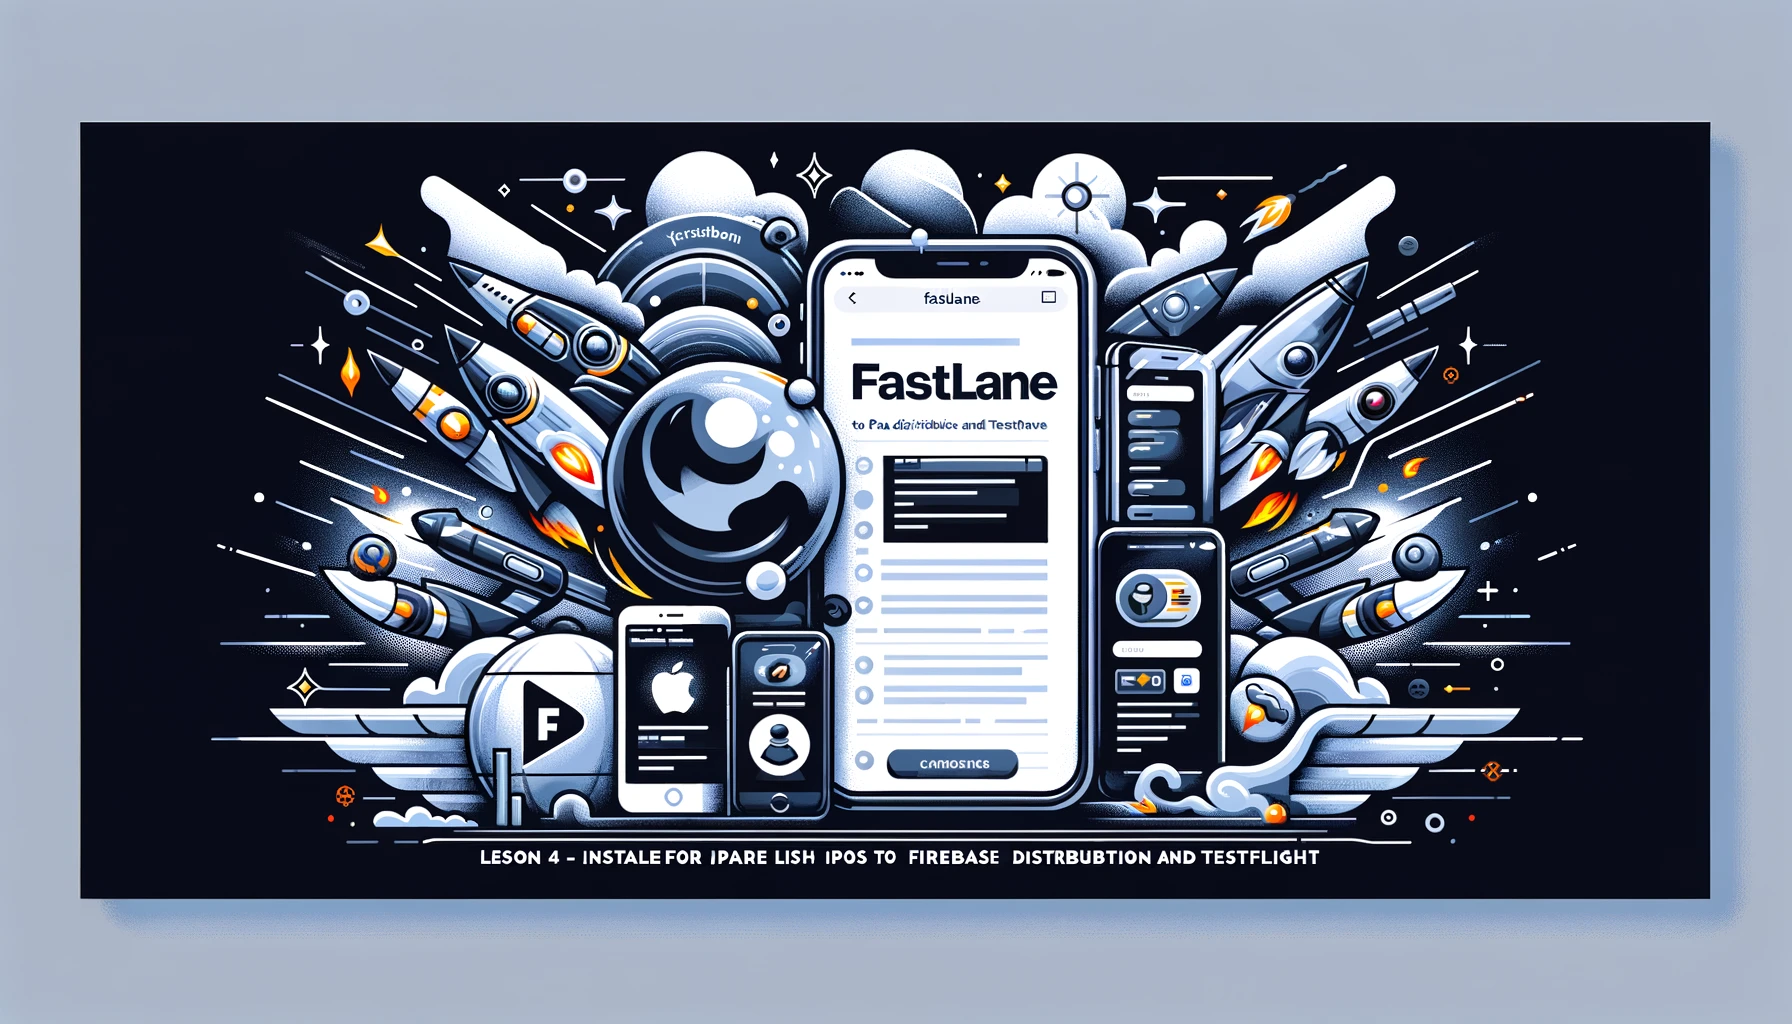 Bài 4 - Cài đặt Fastlane cho IOS đẩy IPA lên Firebase Distribution và Testflight